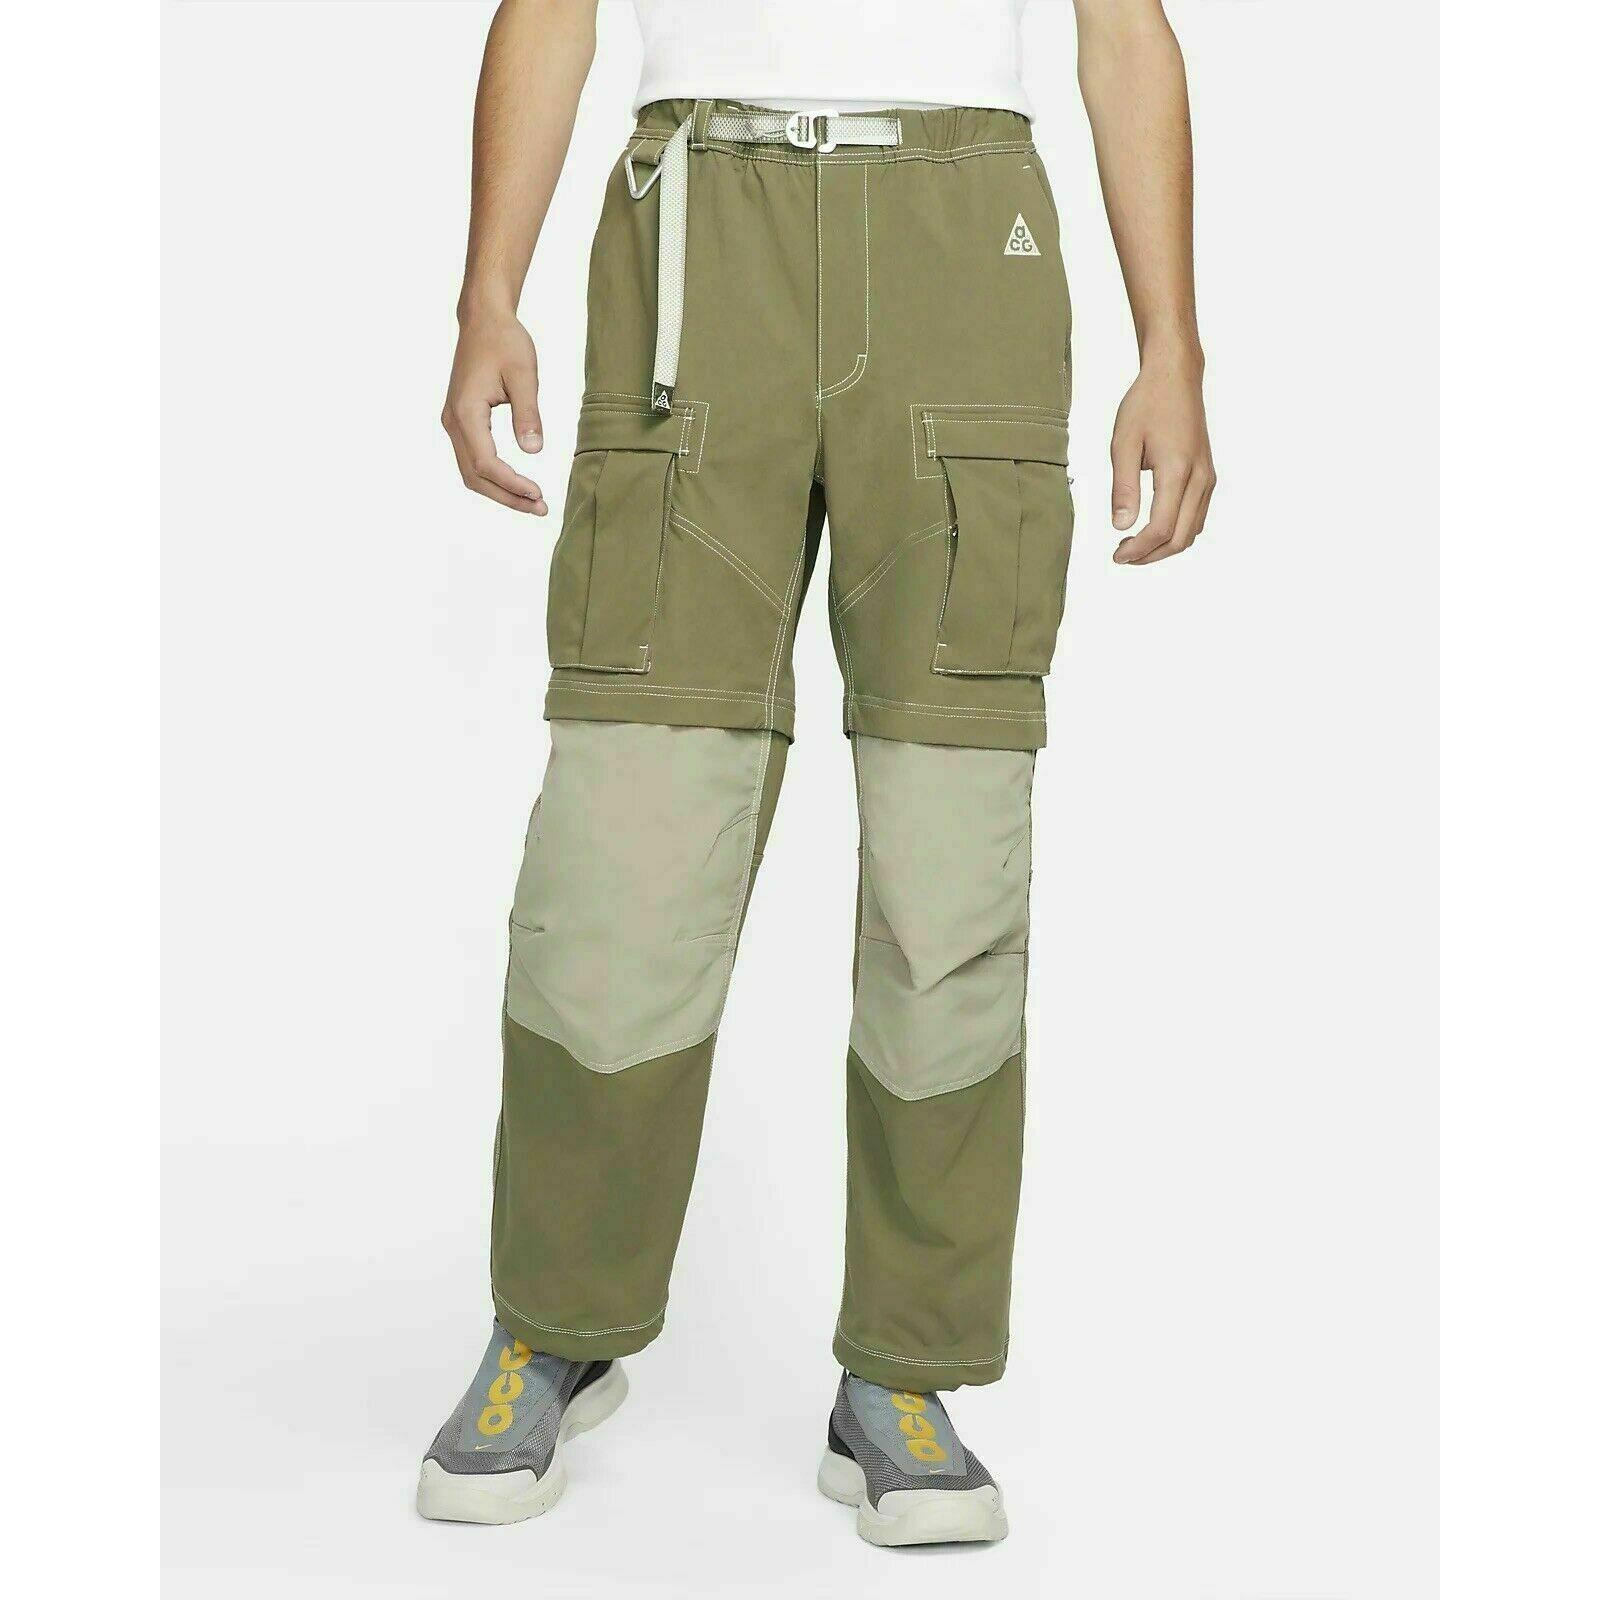 Nike Acg Smith Summit Cargo Pants Size Large Mens Olive Khaki CV0655-222 Rare